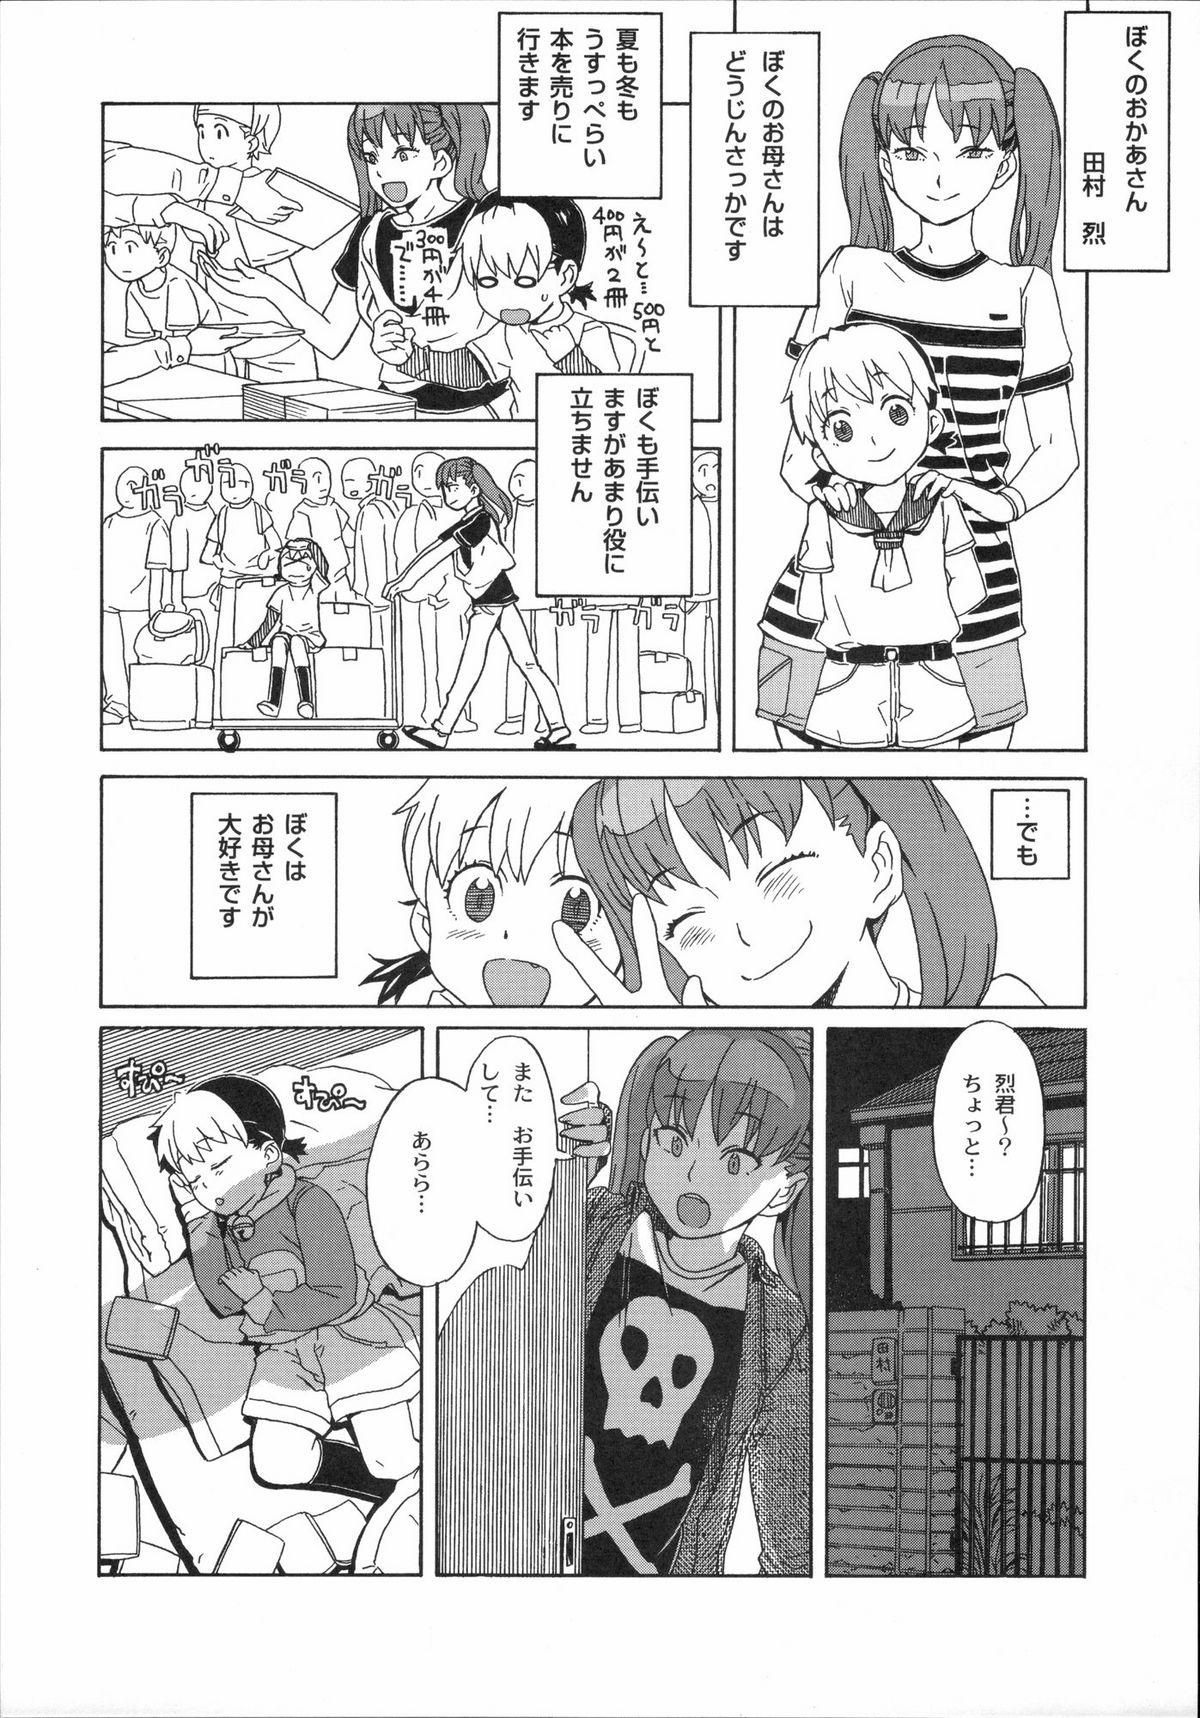 Flashing Shinzui Vol. 3 Lover - Page 10